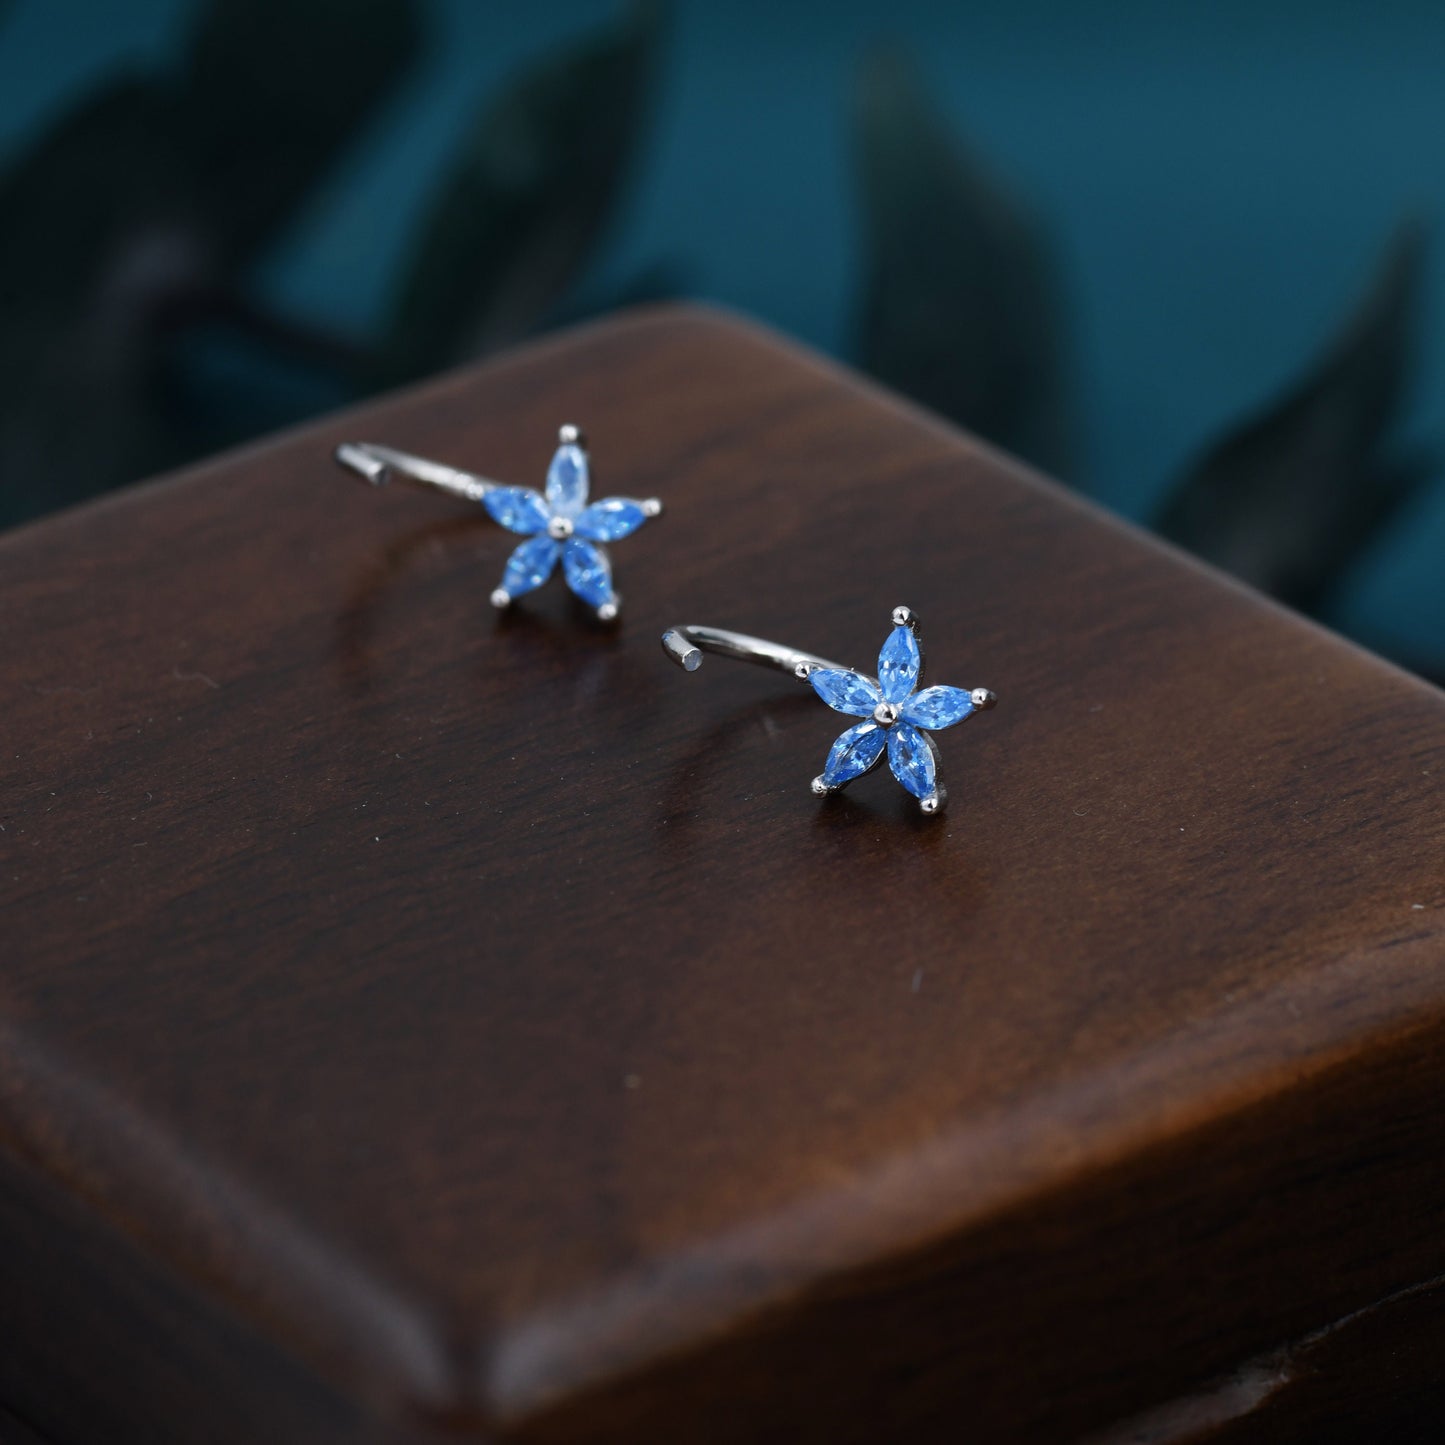 Aquamarine Blue CZ Flower Huggie Hoop Earrings in Sterling Silver, Marquise CZ Flower Threader Hoop Earrings, Pull Through